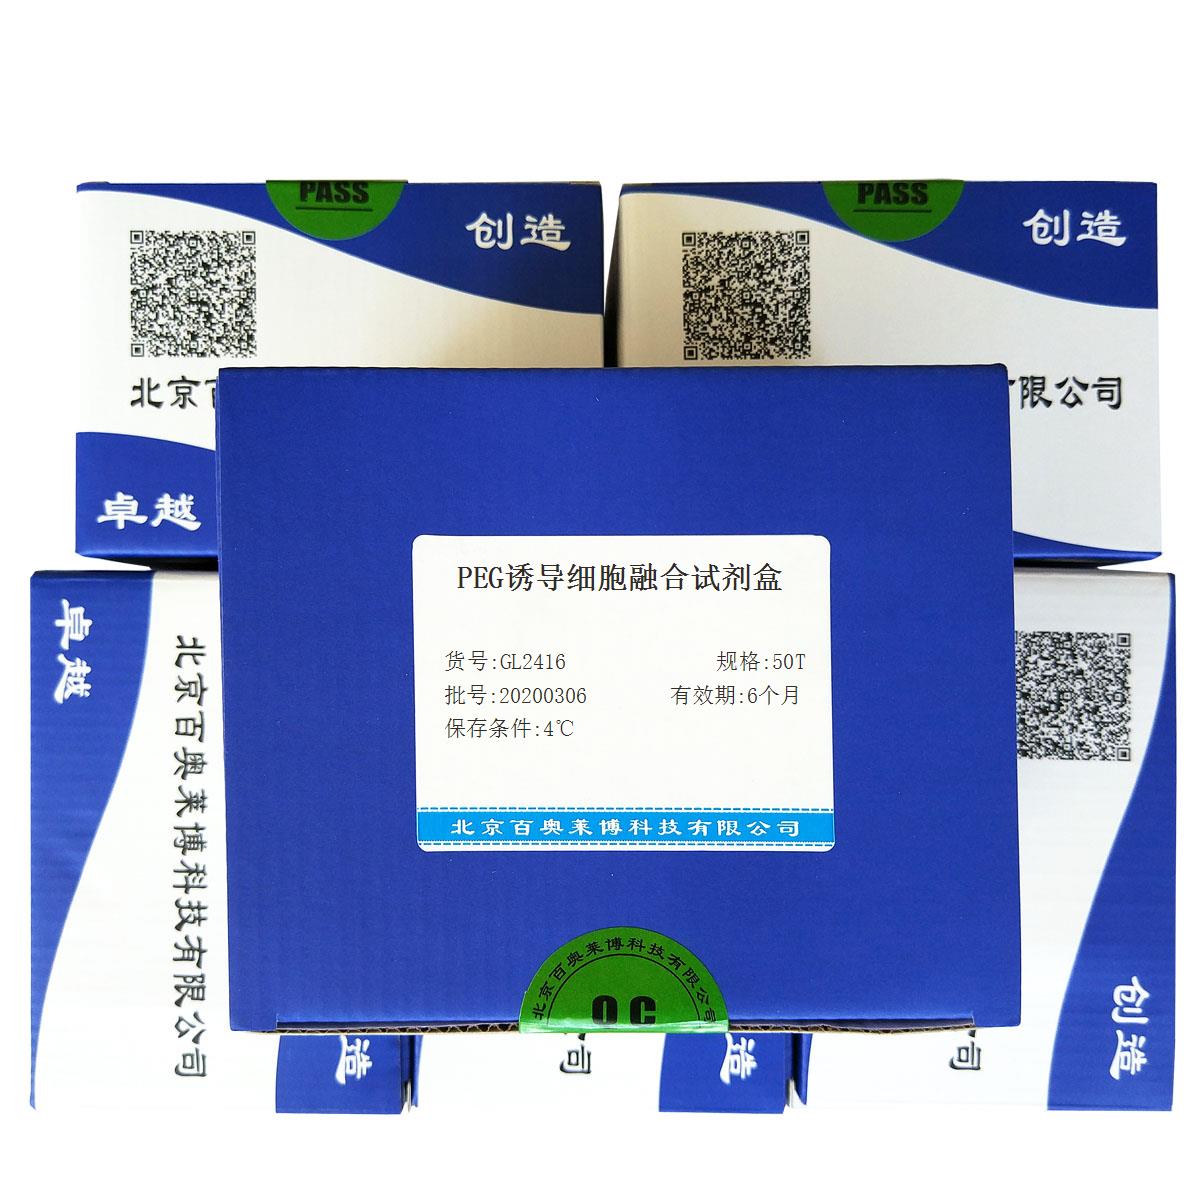 PEG诱导细胞融合试剂盒北京供应商